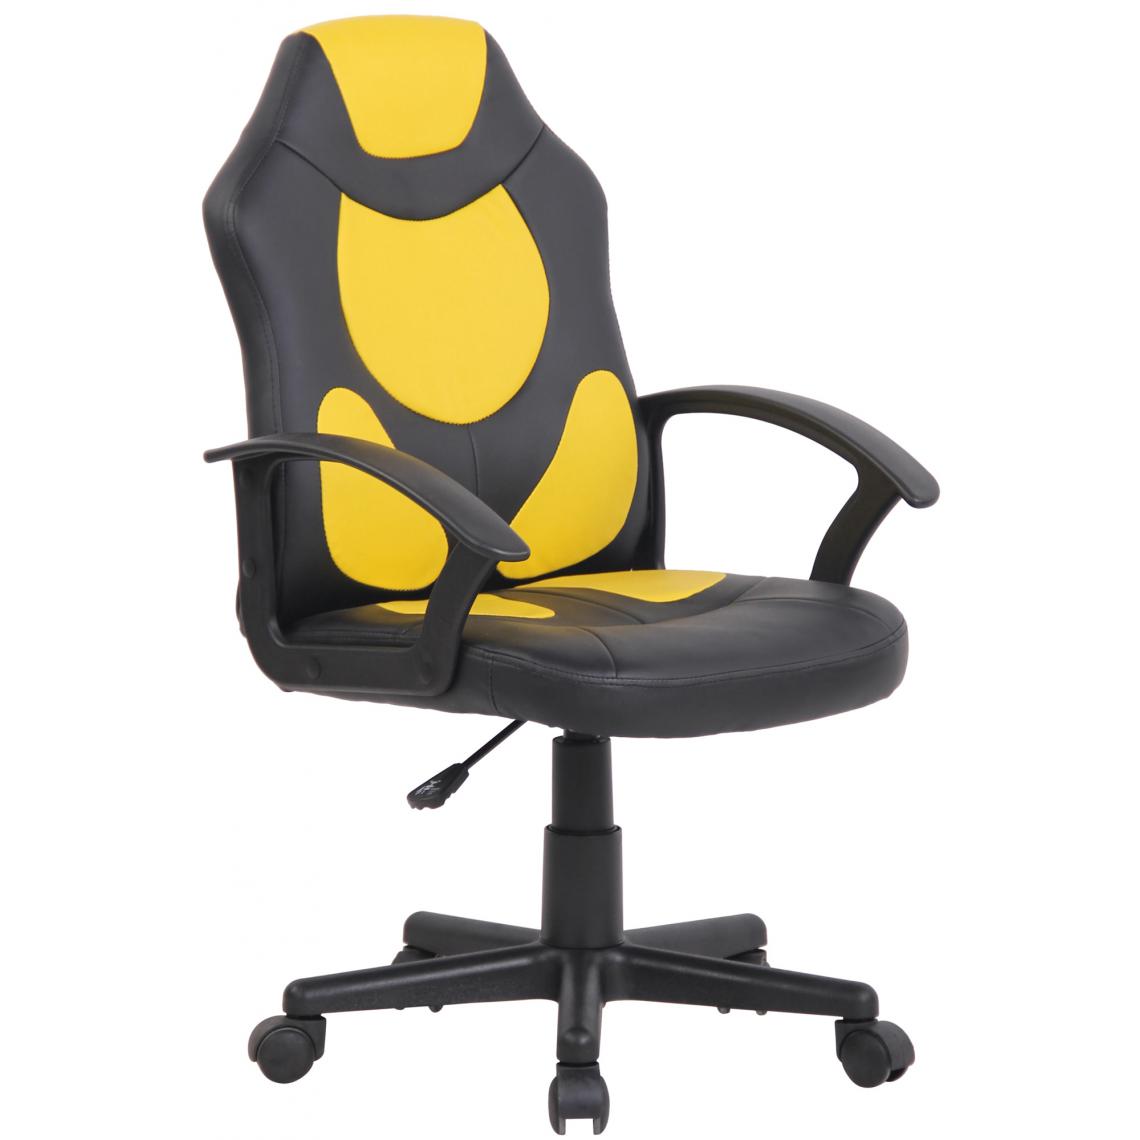 Icaverne - Inedit Chaise de bureau enfant edition Luxembourg couleur noir jaune - Chaises